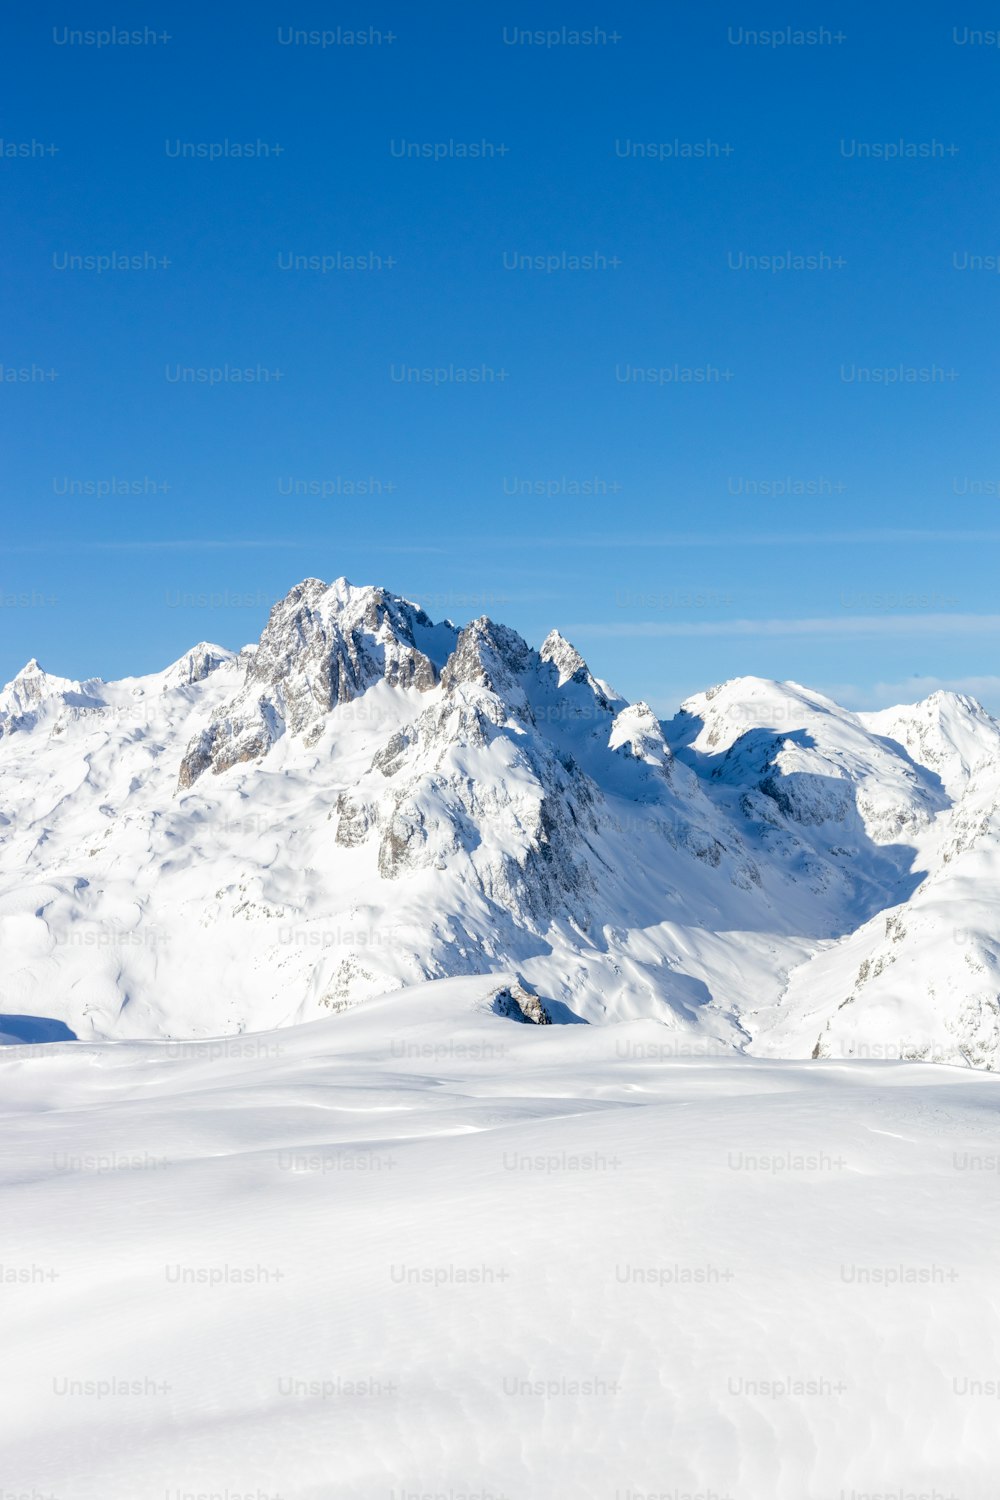 um homem montando esquis em cima de uma encosta coberta de neve